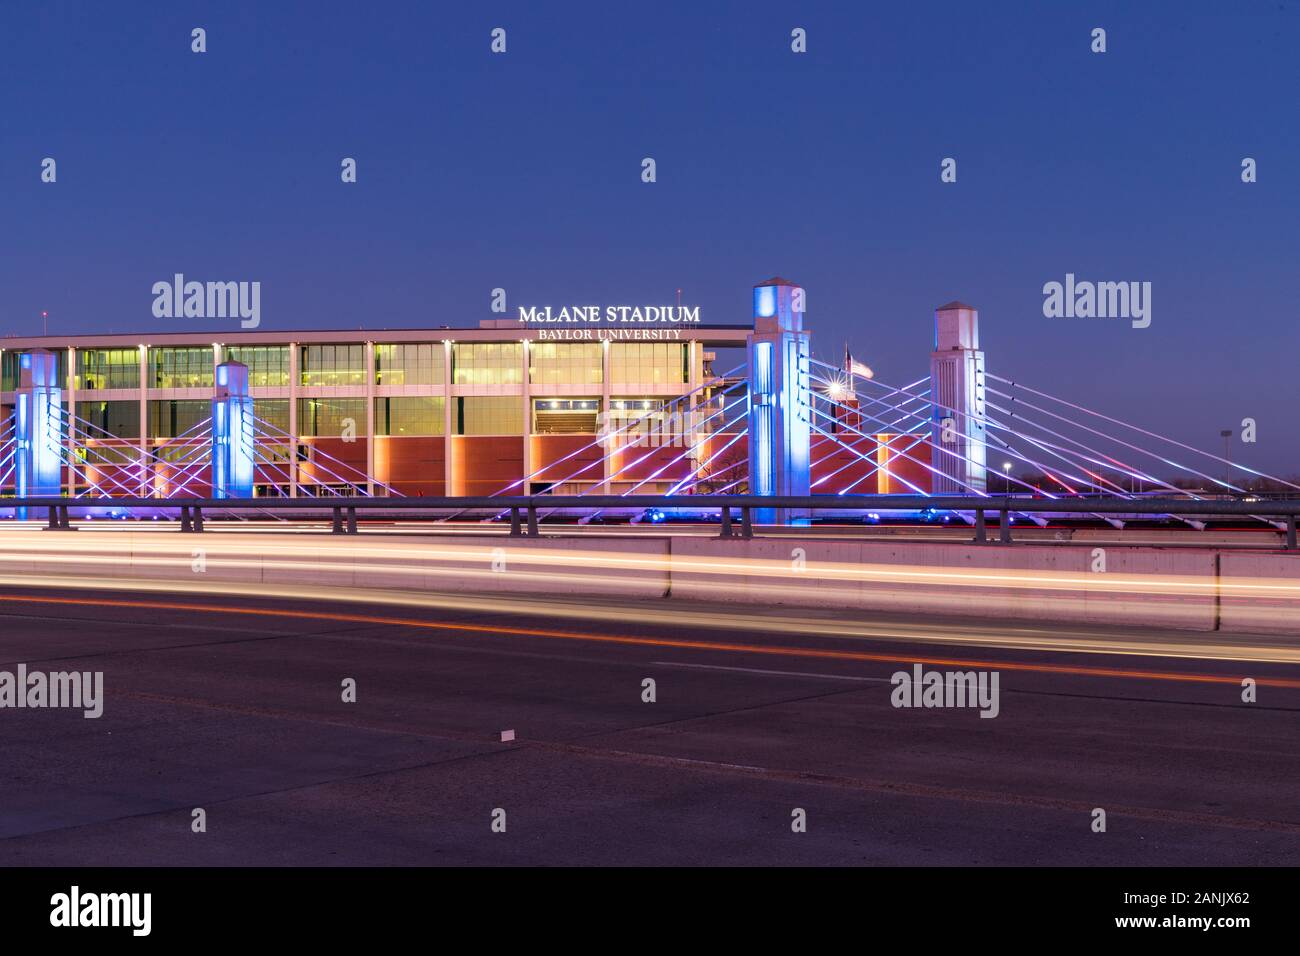 Waco, TX/USA - Januar 12, 2020: McLane Stadium auf dem Campus der Baylor Universität, für Fußballspiele genutzt. Stockfoto